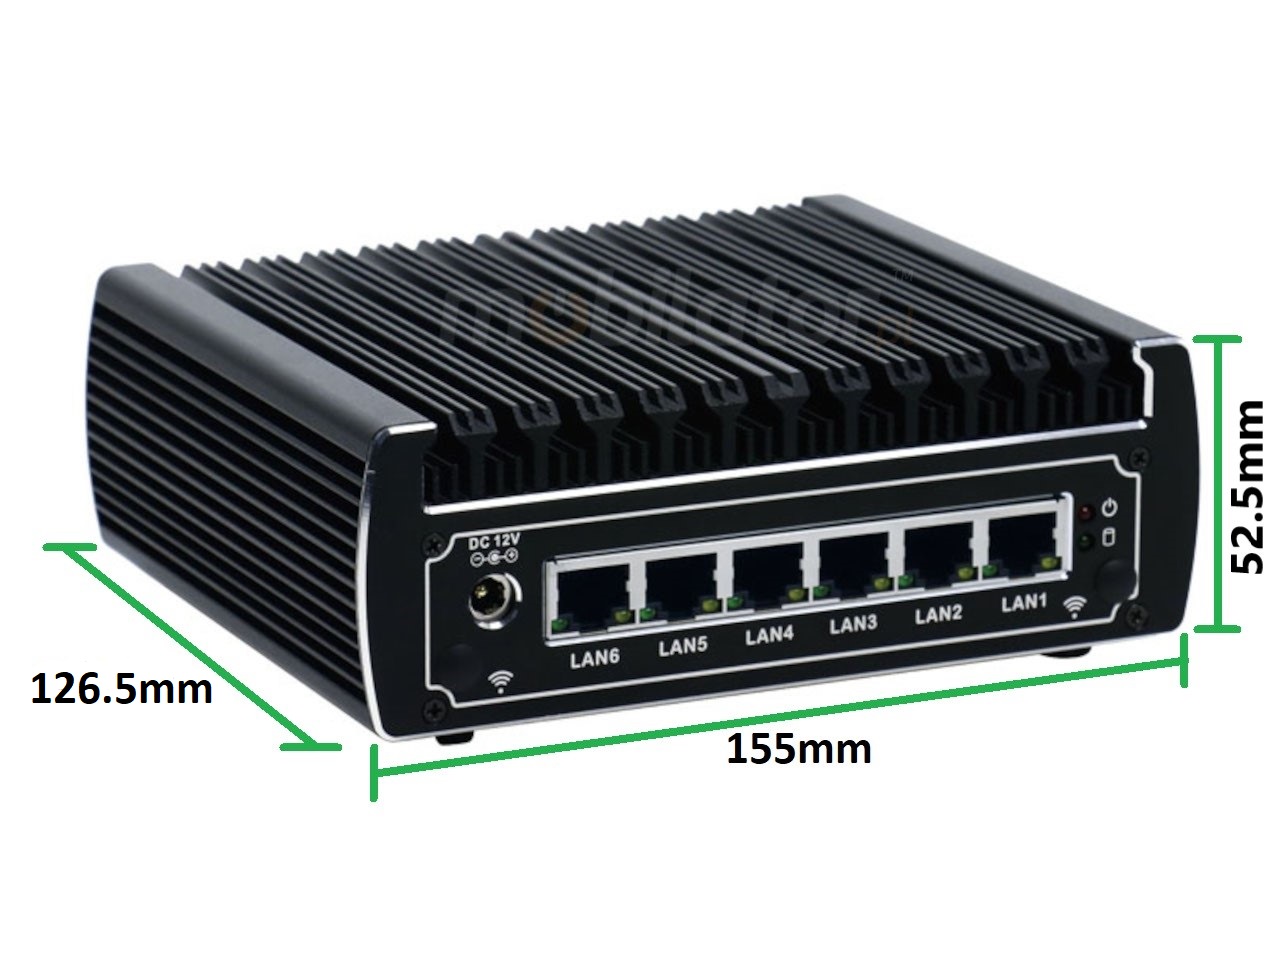   IBOX N133 v.15, wymiary SSD DDR4 WIFI BLUETOOTH, przemysowy, may, szybki, niezawodny, fanless, industrial, small, LAN, INTEL i3